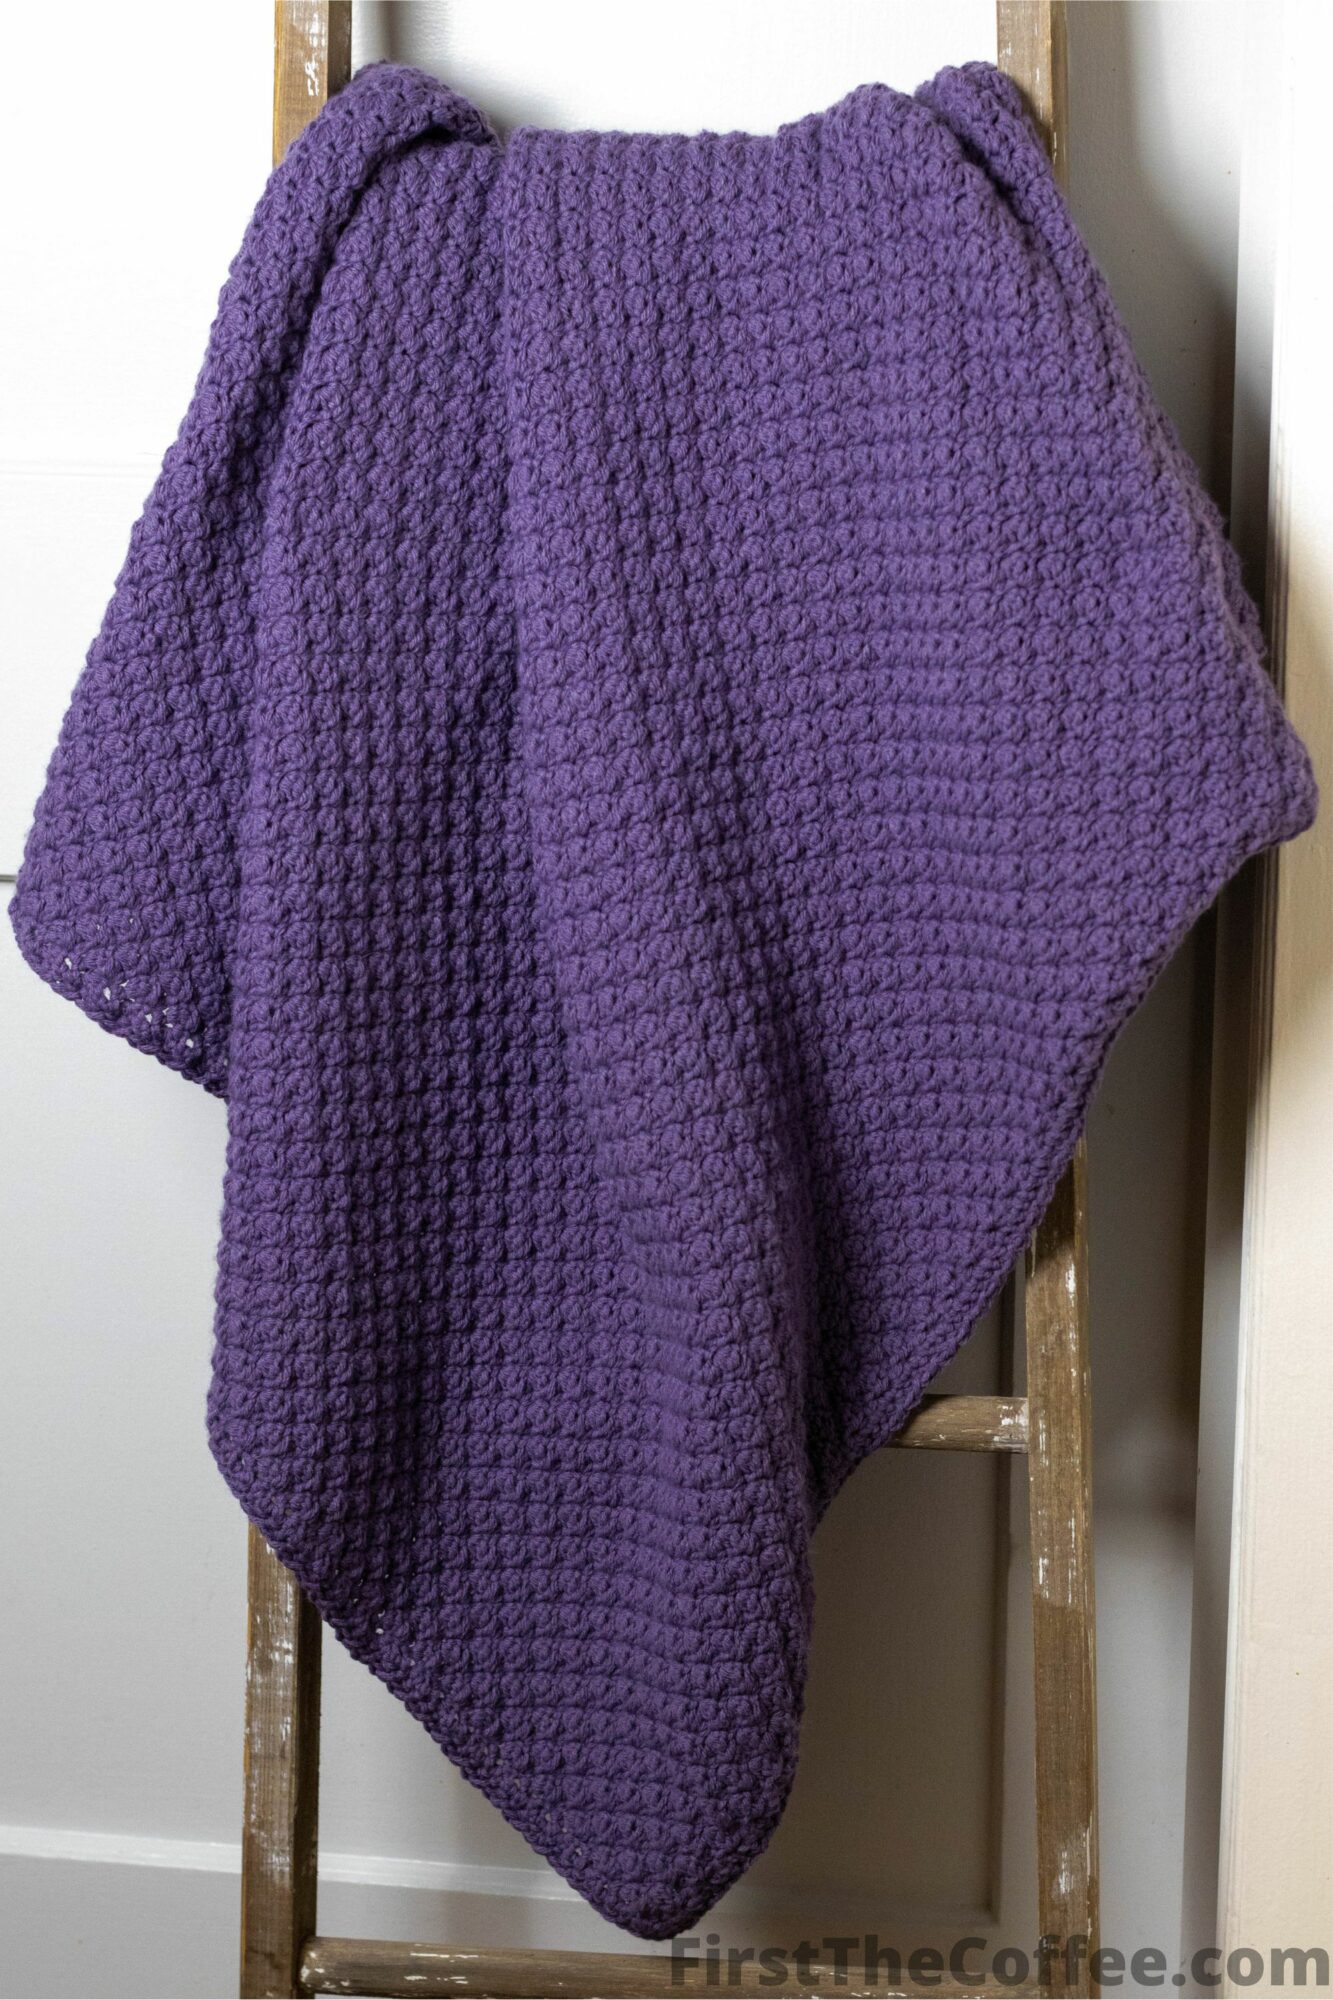 Suzette Stitch Crochet Blanket on Blanket Ladder